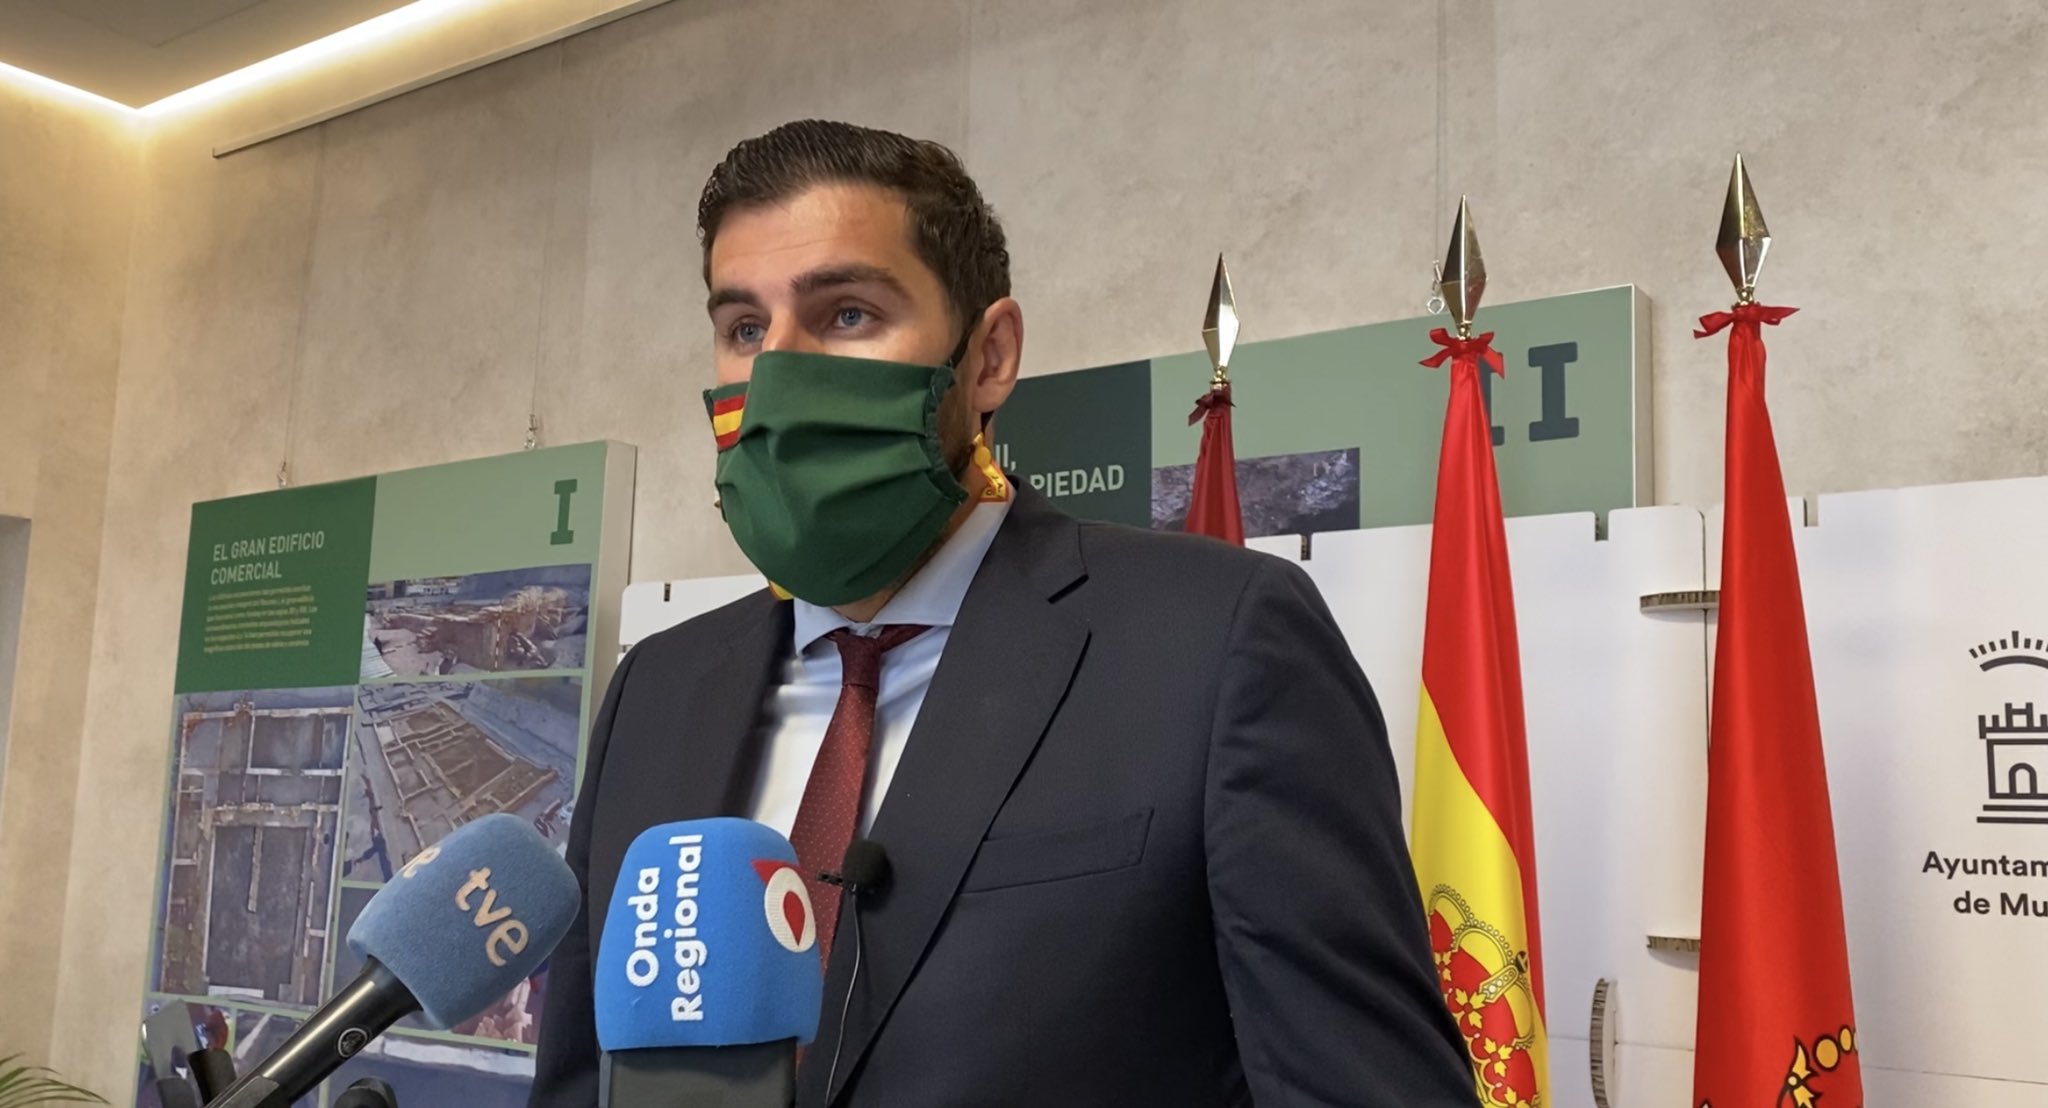 Múrcia aprova l'himne espanyol, la bandera i el retrat del rei a les escoles